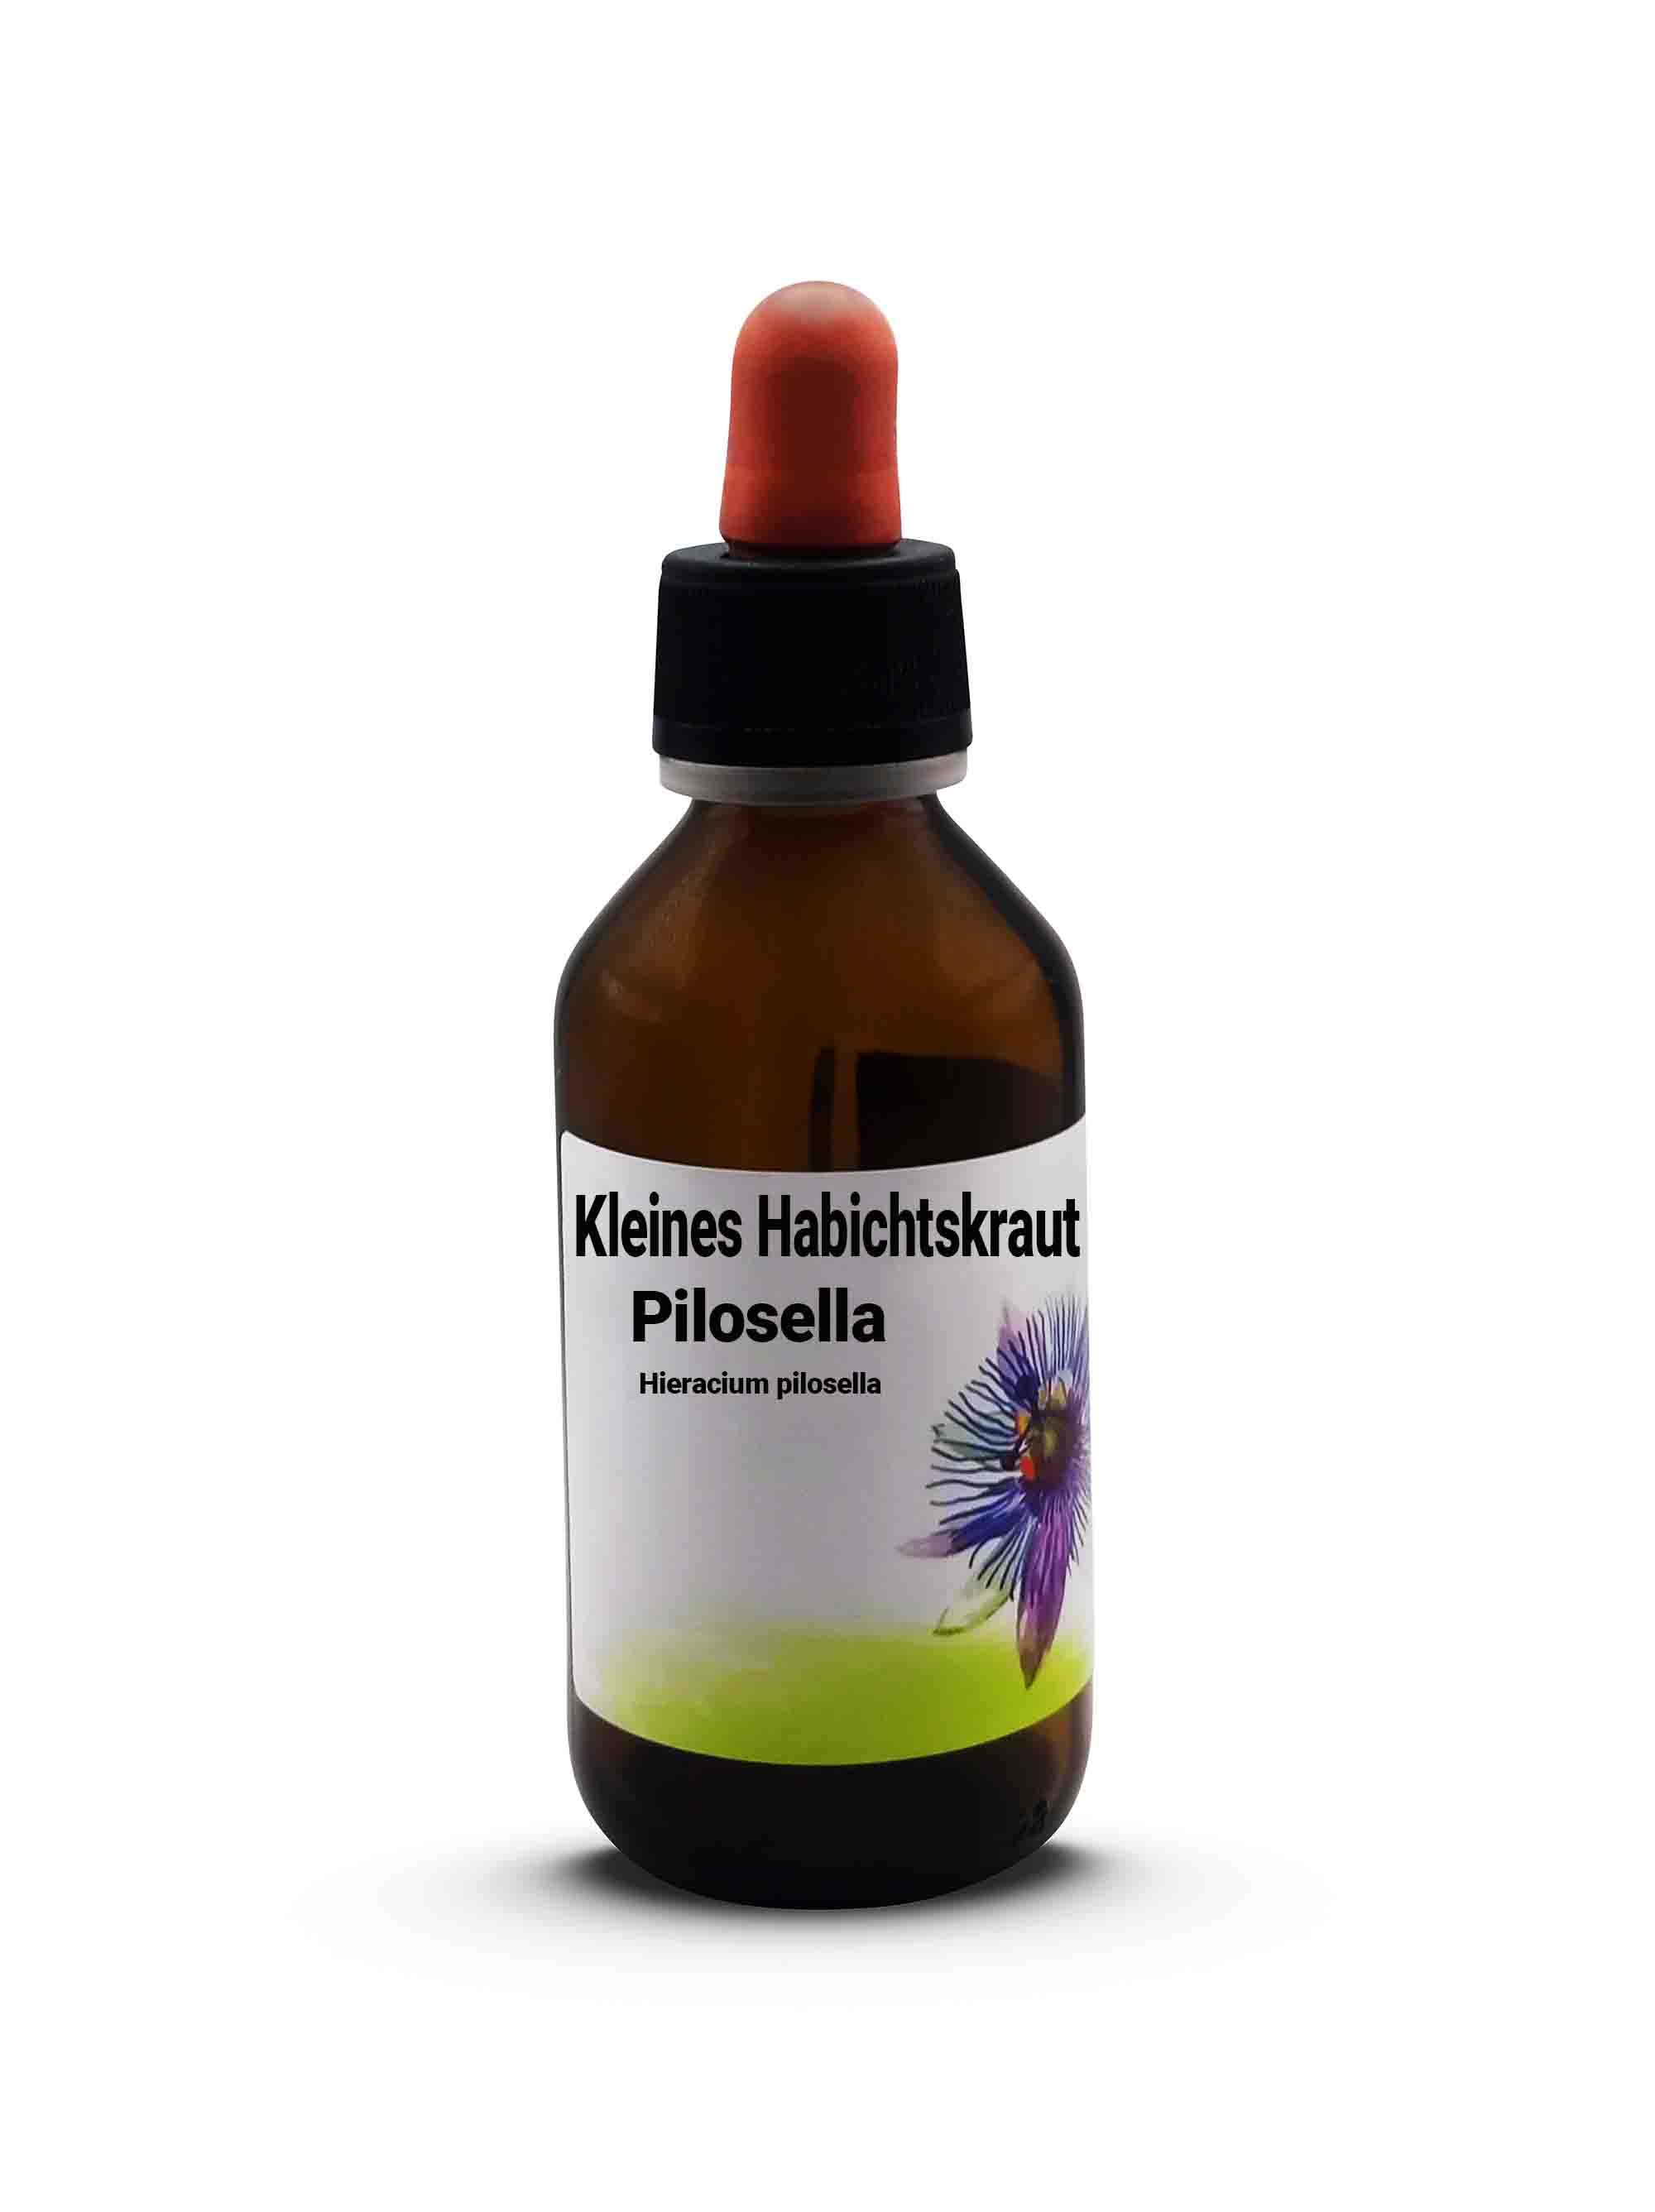 Kleines Habichtskraut Pilosella  Hieracium pilosella 100 ml